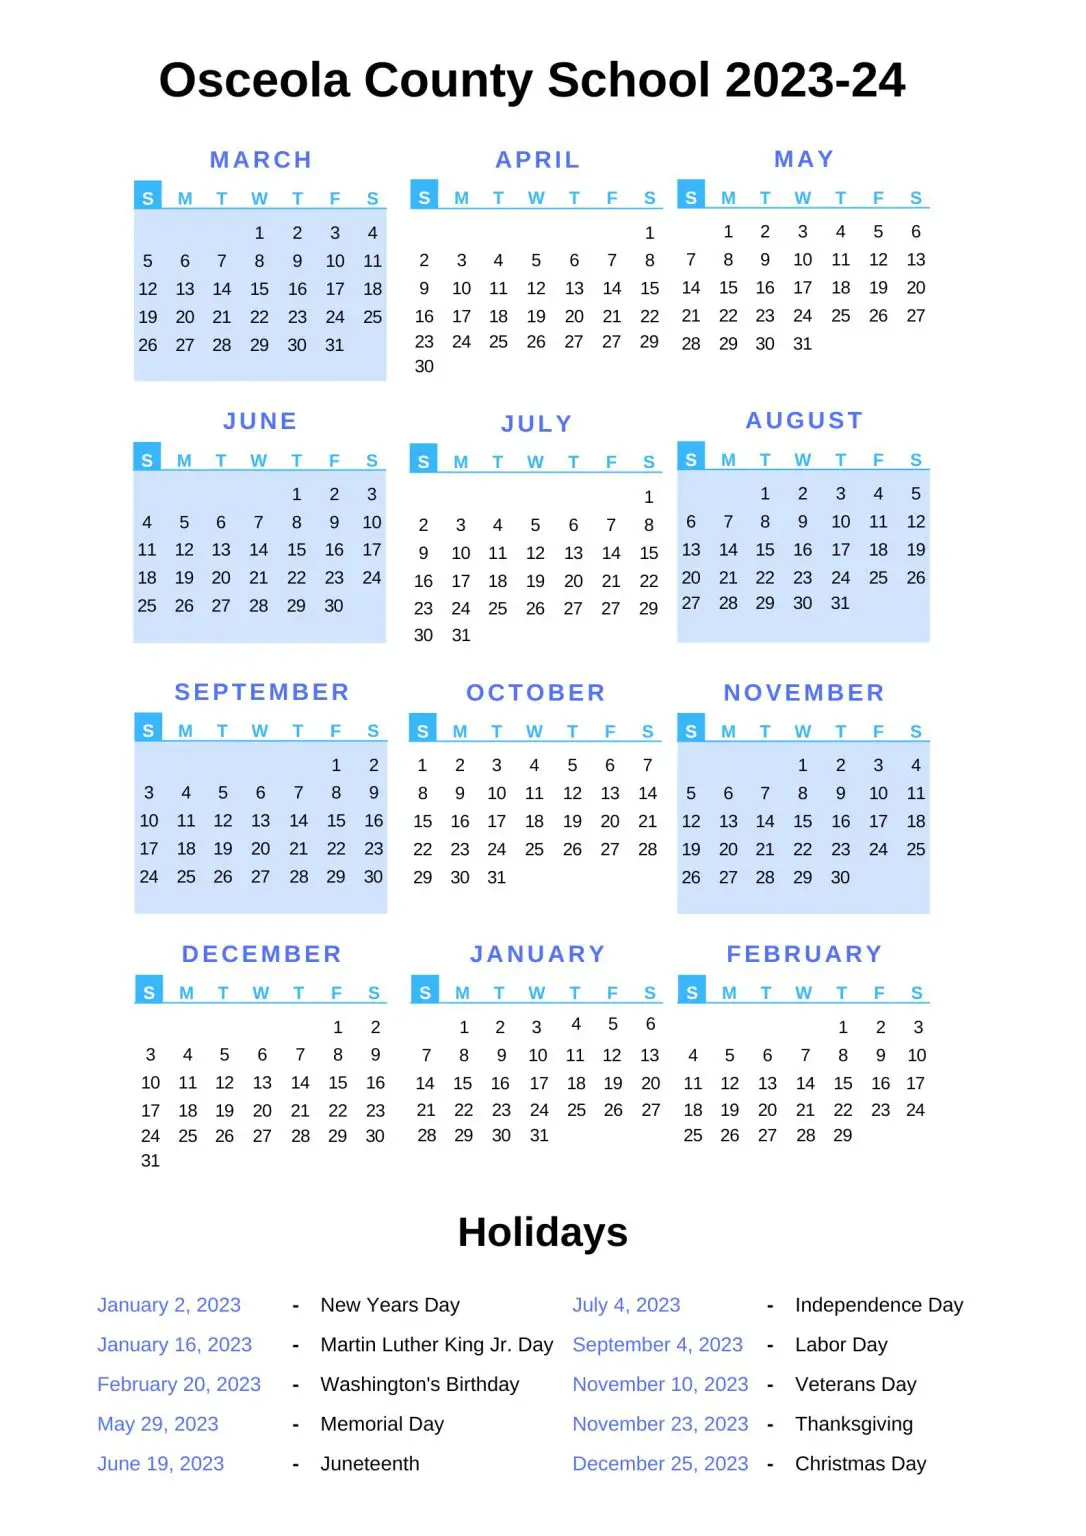 osceola-county-school-calendar-2023-24-with-holidays